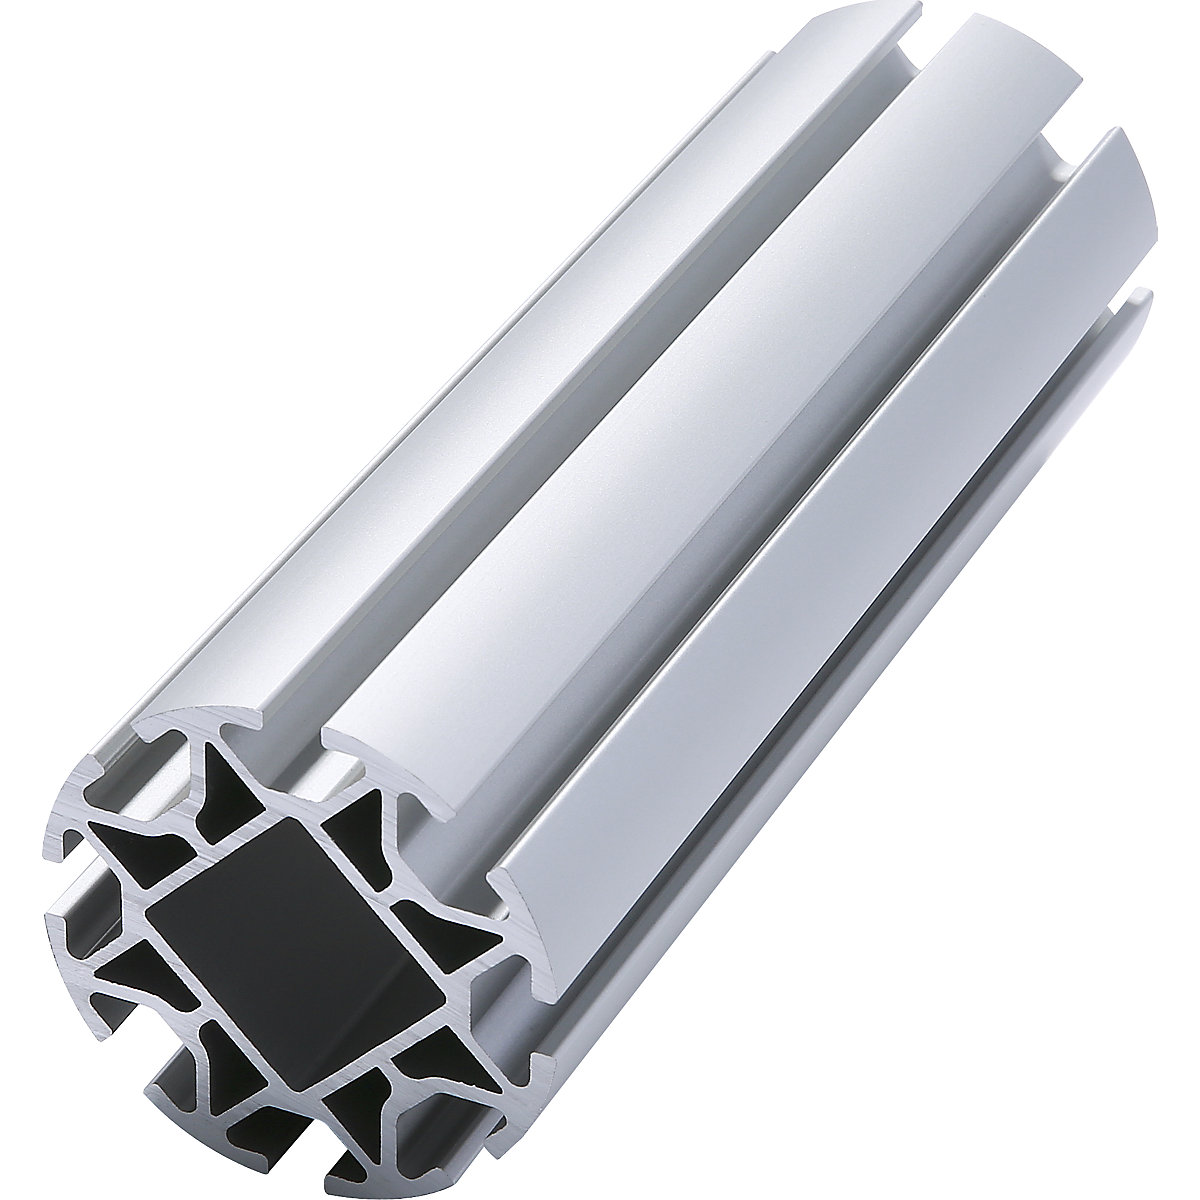 Tubo in profilati di alluminio NGP60: al metro lineare